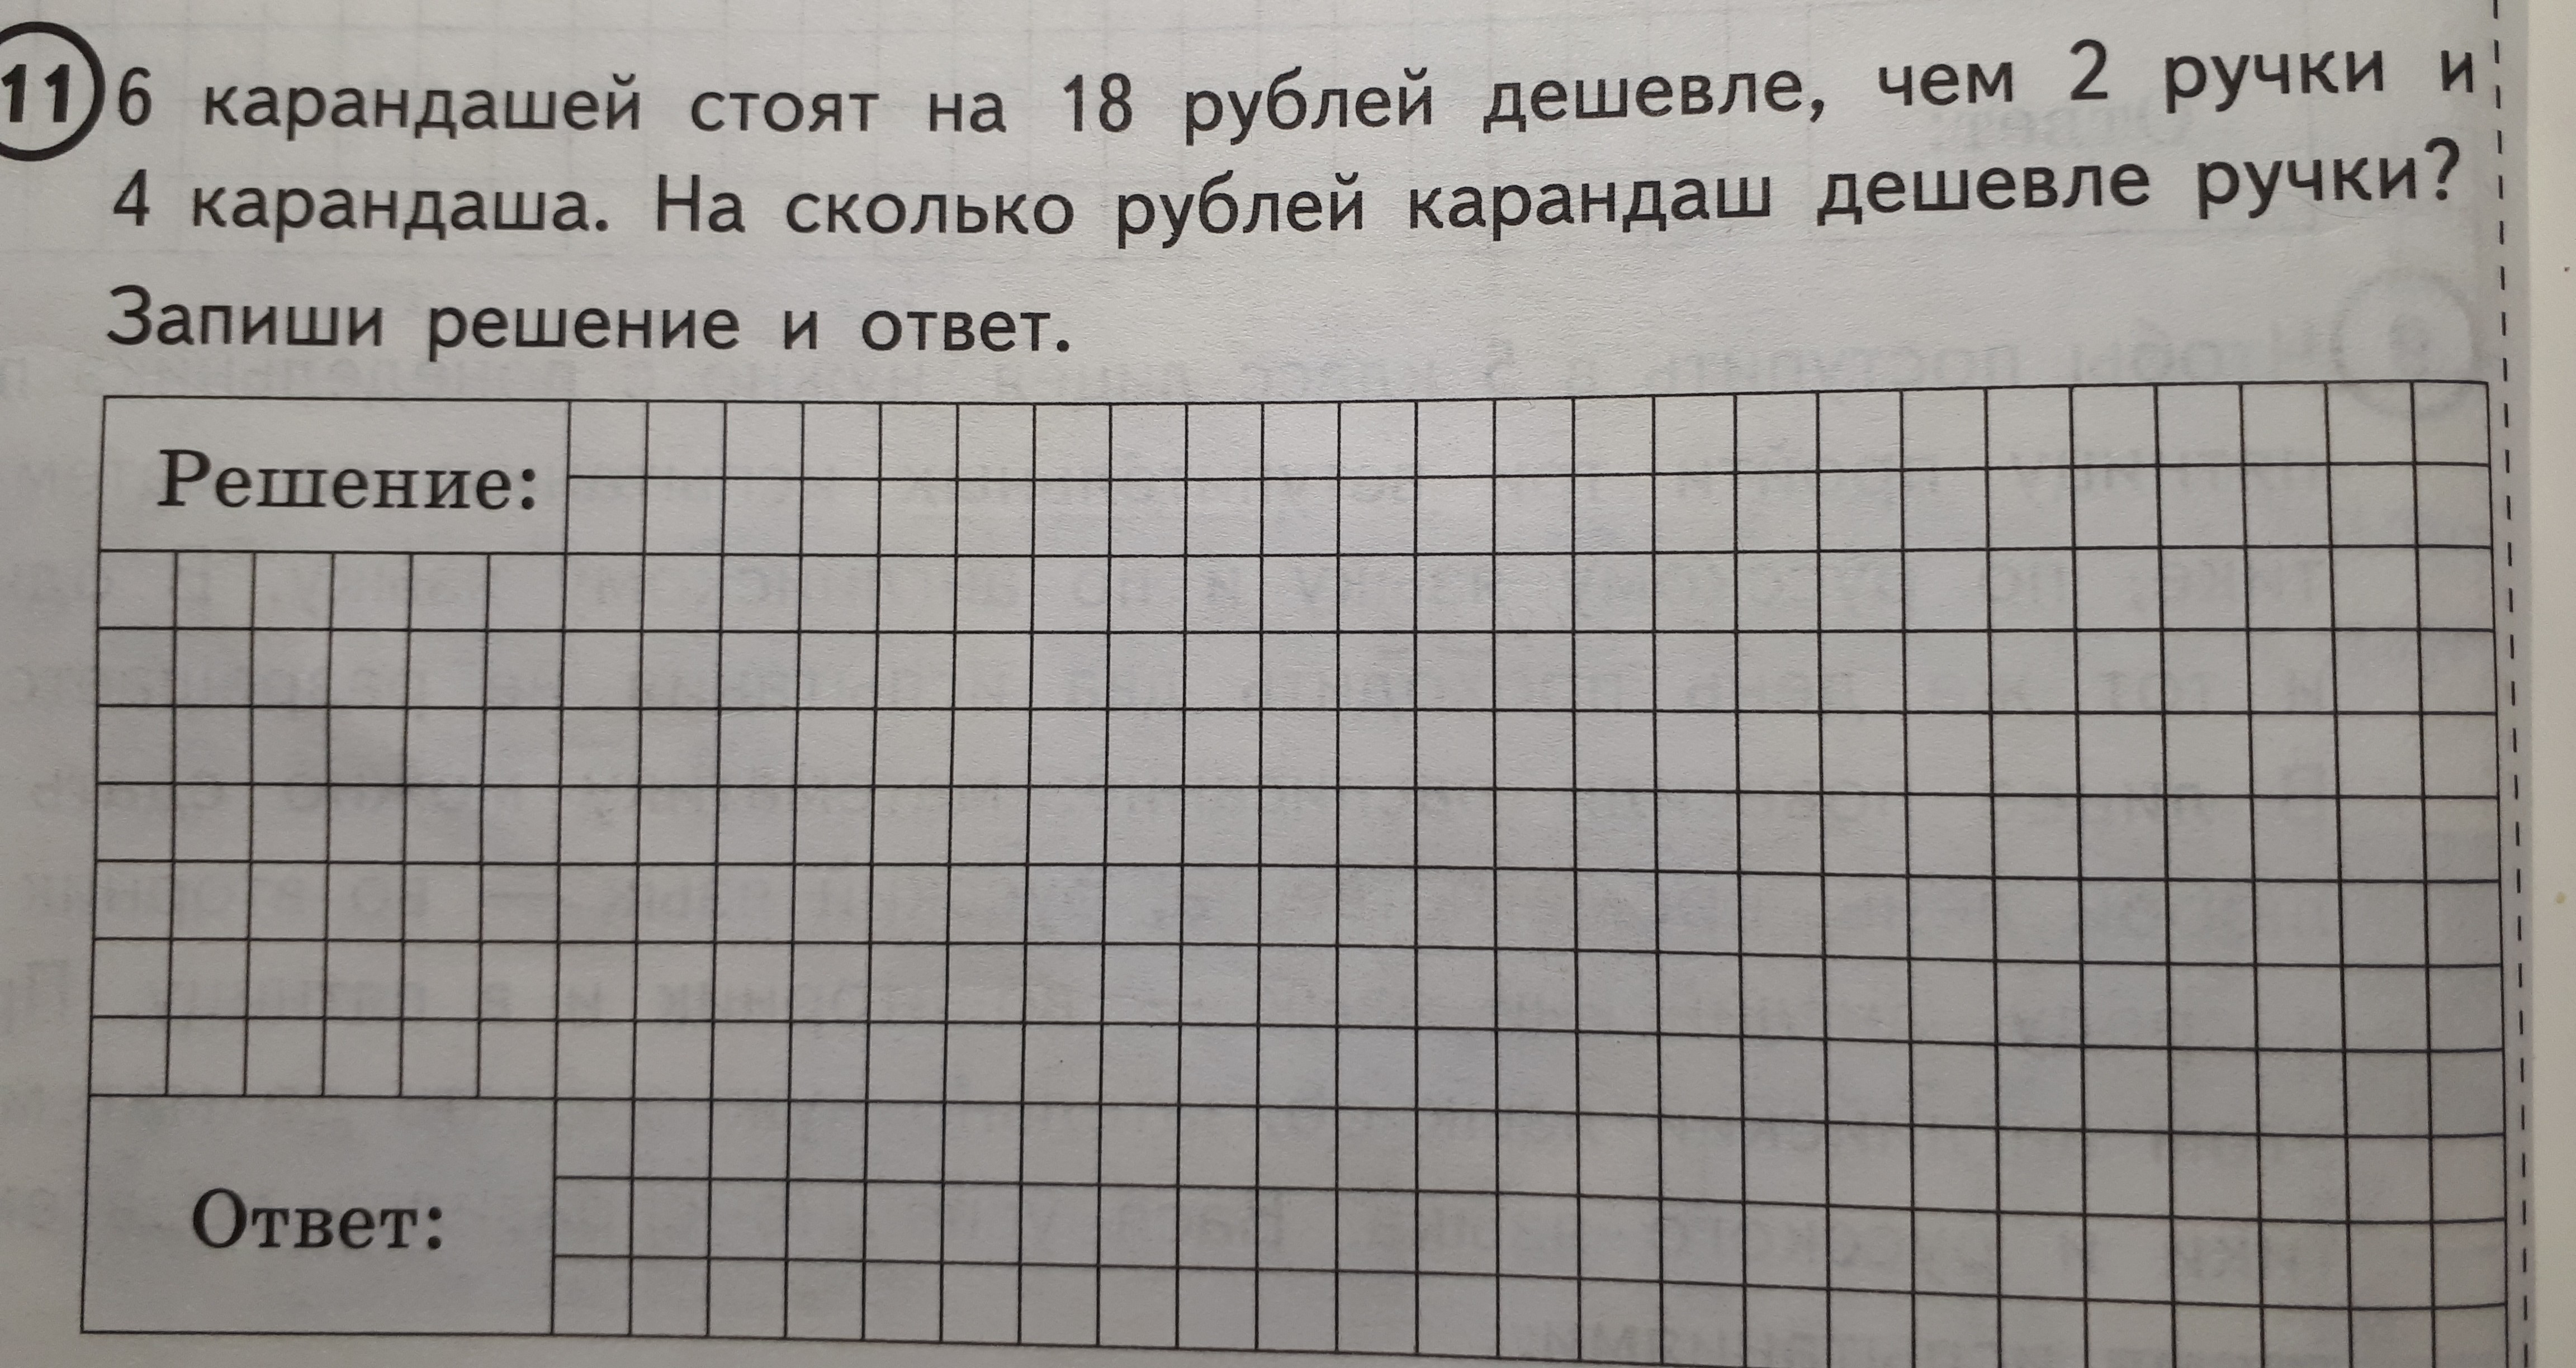 Цена карандаша 6 рублей сколько. 6 Карандашей стоят. 6 Карандашей стоят на 18 рублей. Задача про карандаши. Решение задачи с карандашами.